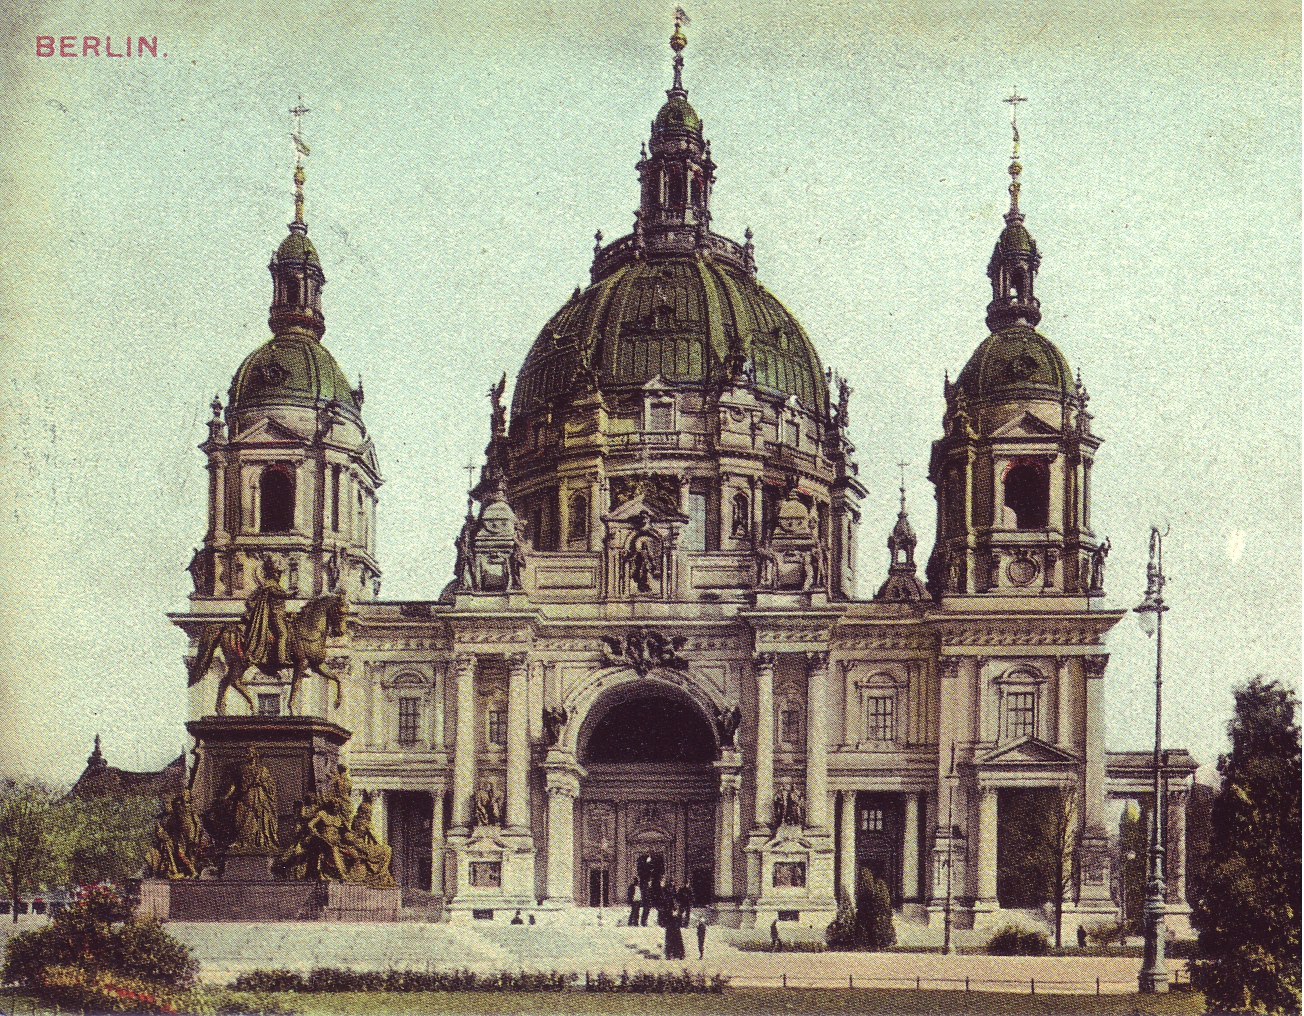 View of Berliner Dom in Berlin, around 1900.